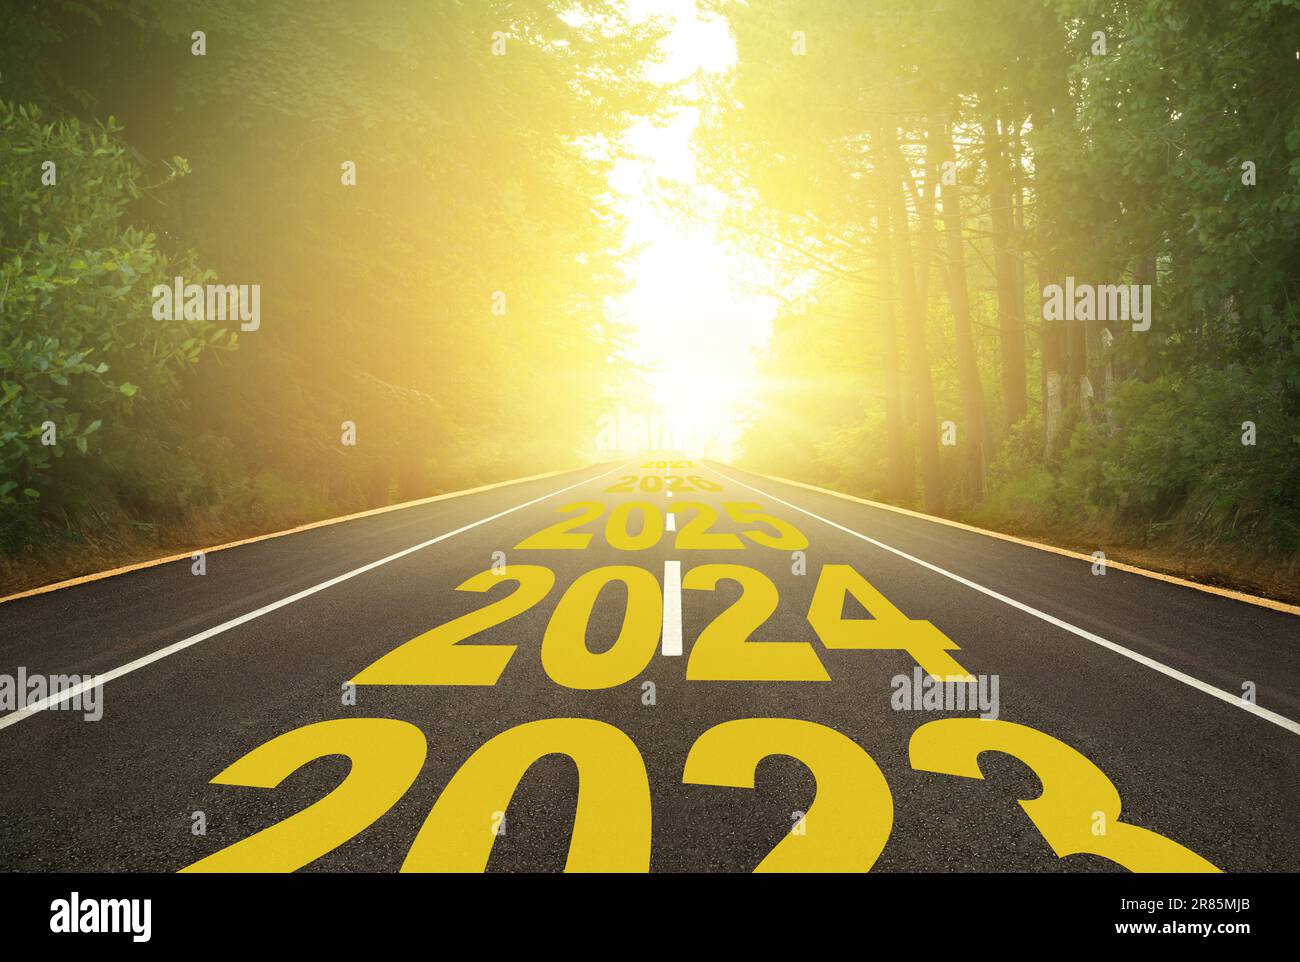 Das Wort 2024 auf einer Waldstraße. Konzept für das neue Jahr 2024-2027. Der Weg ins neue Jahr wird durch den Pfeil angezeigt. Jubiläumsvorbereitung Stockfoto